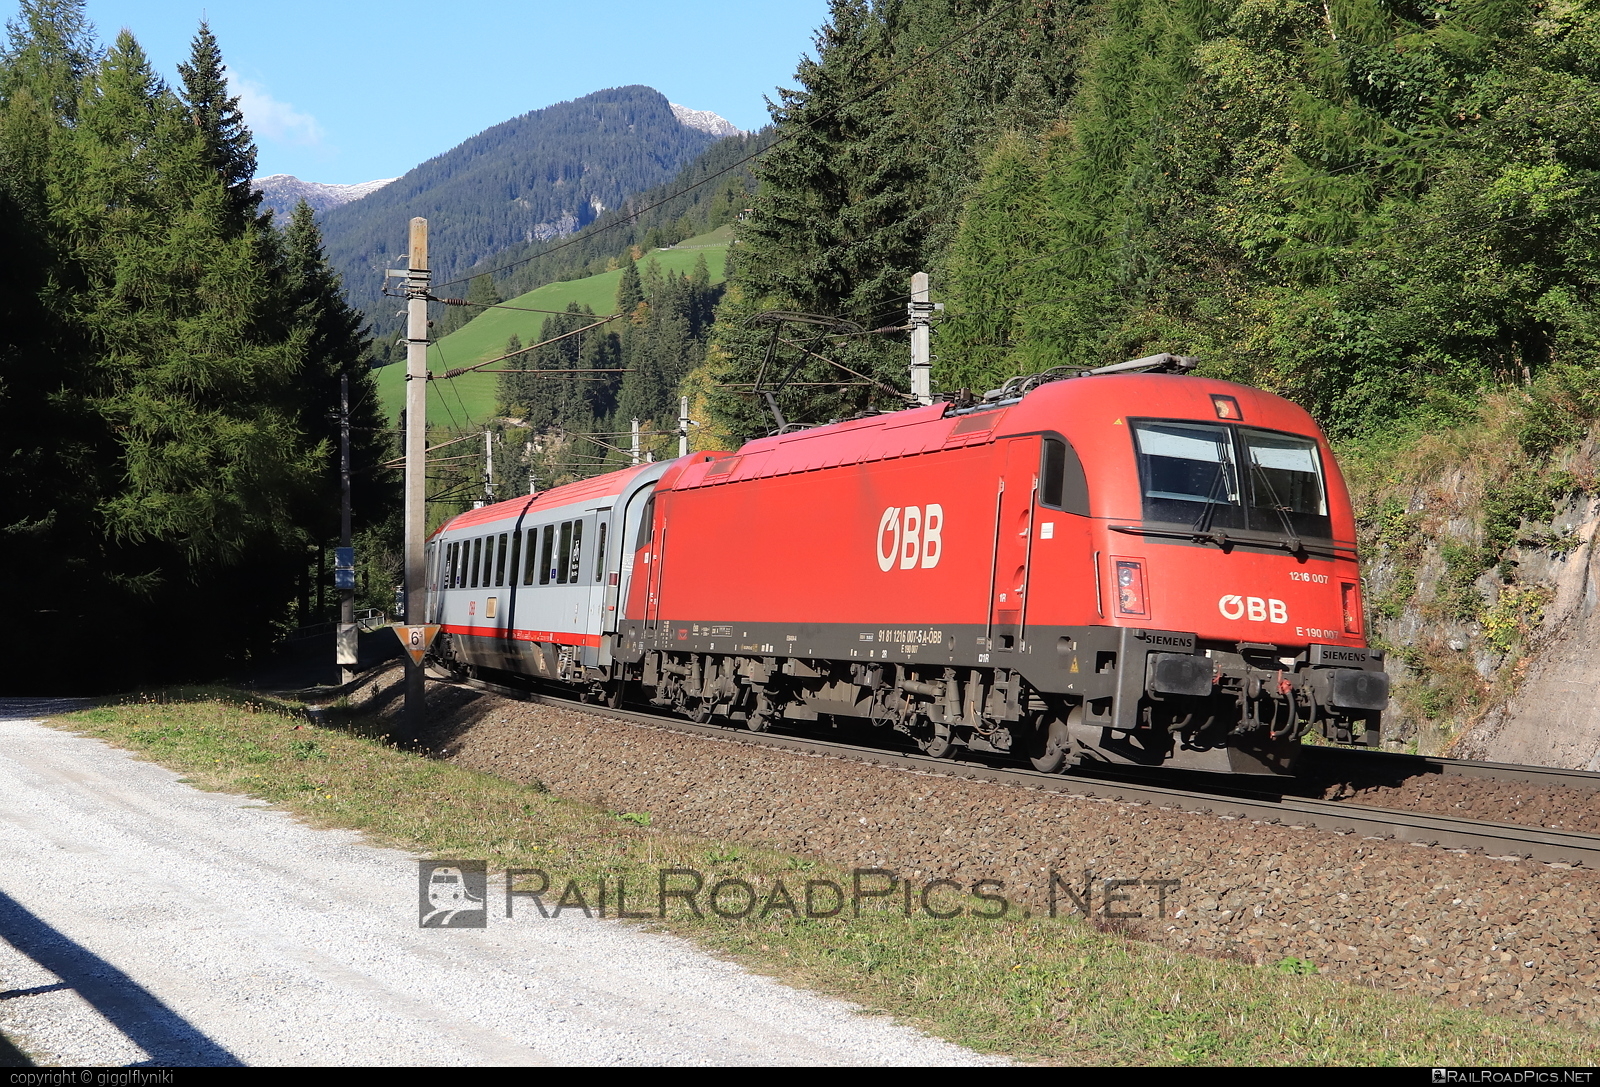 Siemens ES 64 U4 - 1216 007 operated by Österreichische Bundesbahnen #es64 #es64u4 #eurosprinter #obb #osterreichischebundesbahnen #siemens #siemensEs64 #siemensEs64u4 #siemenstaurus #taurus #tauruslocomotive